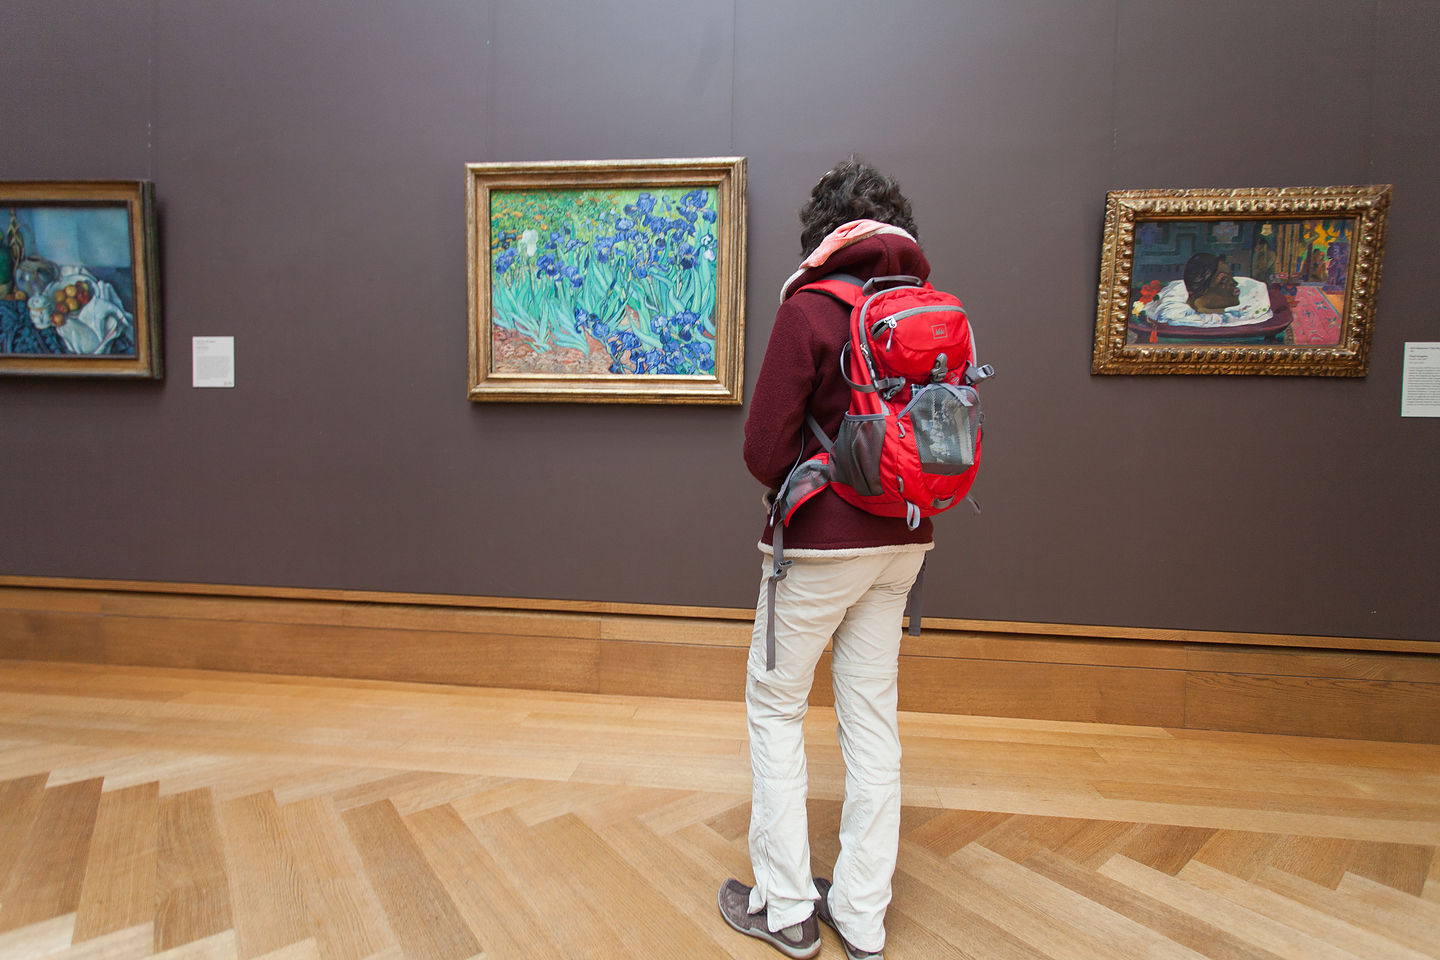 Lolo with Van Gogh’s Irises